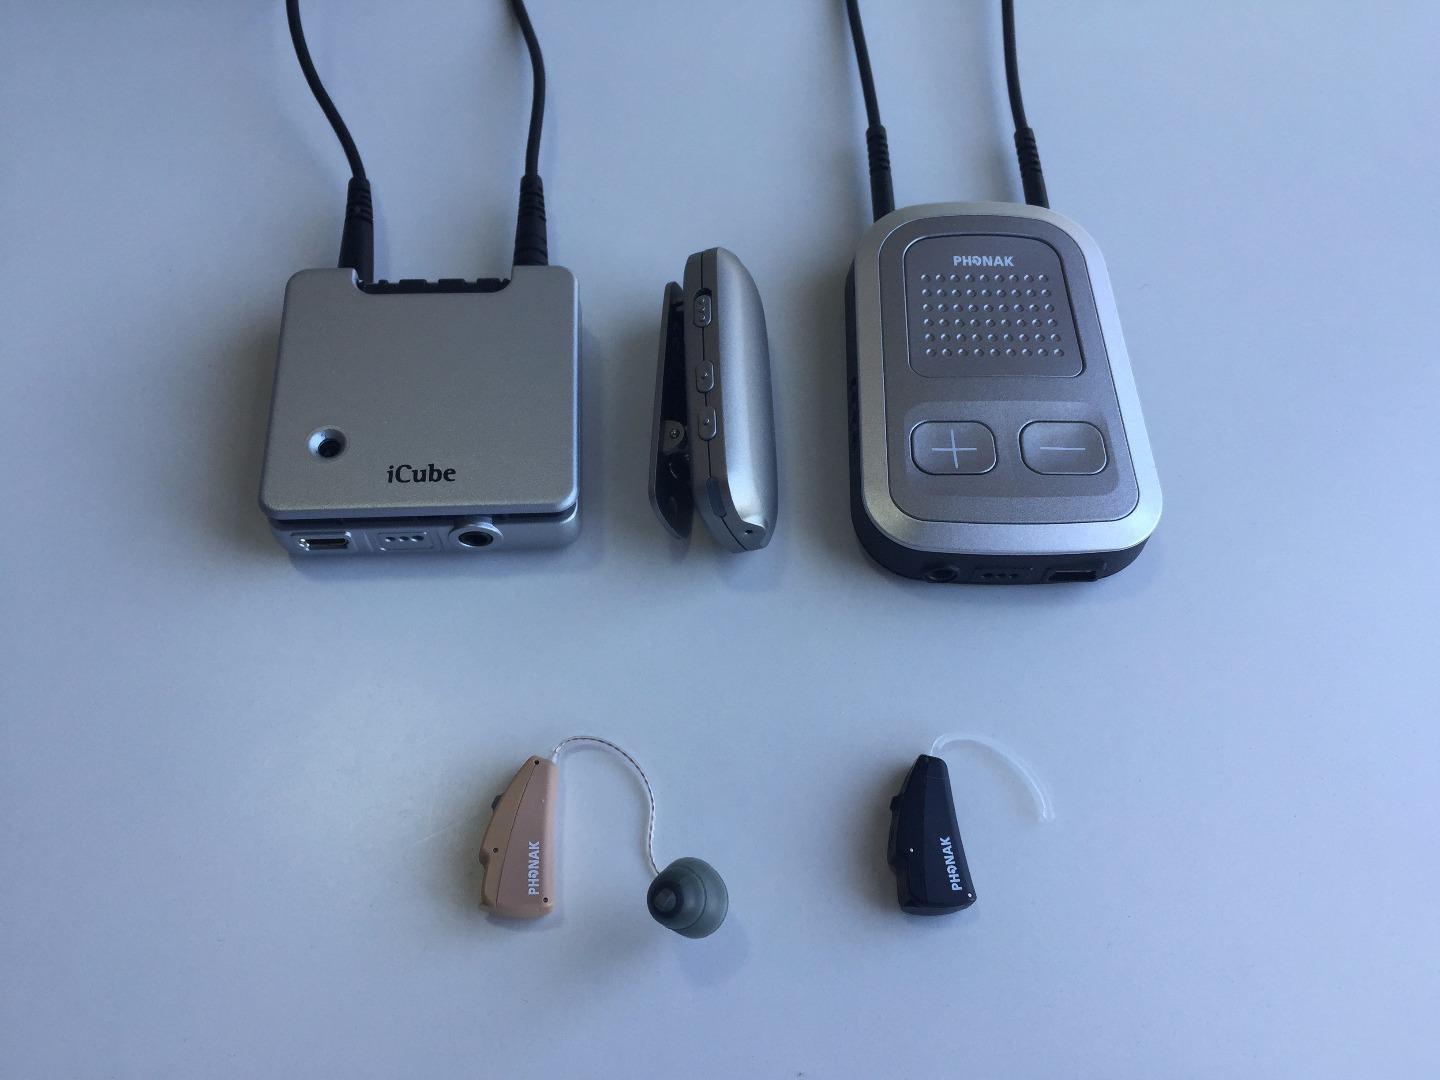 峰力助听器和瑞声达助听器的实戴感受对比